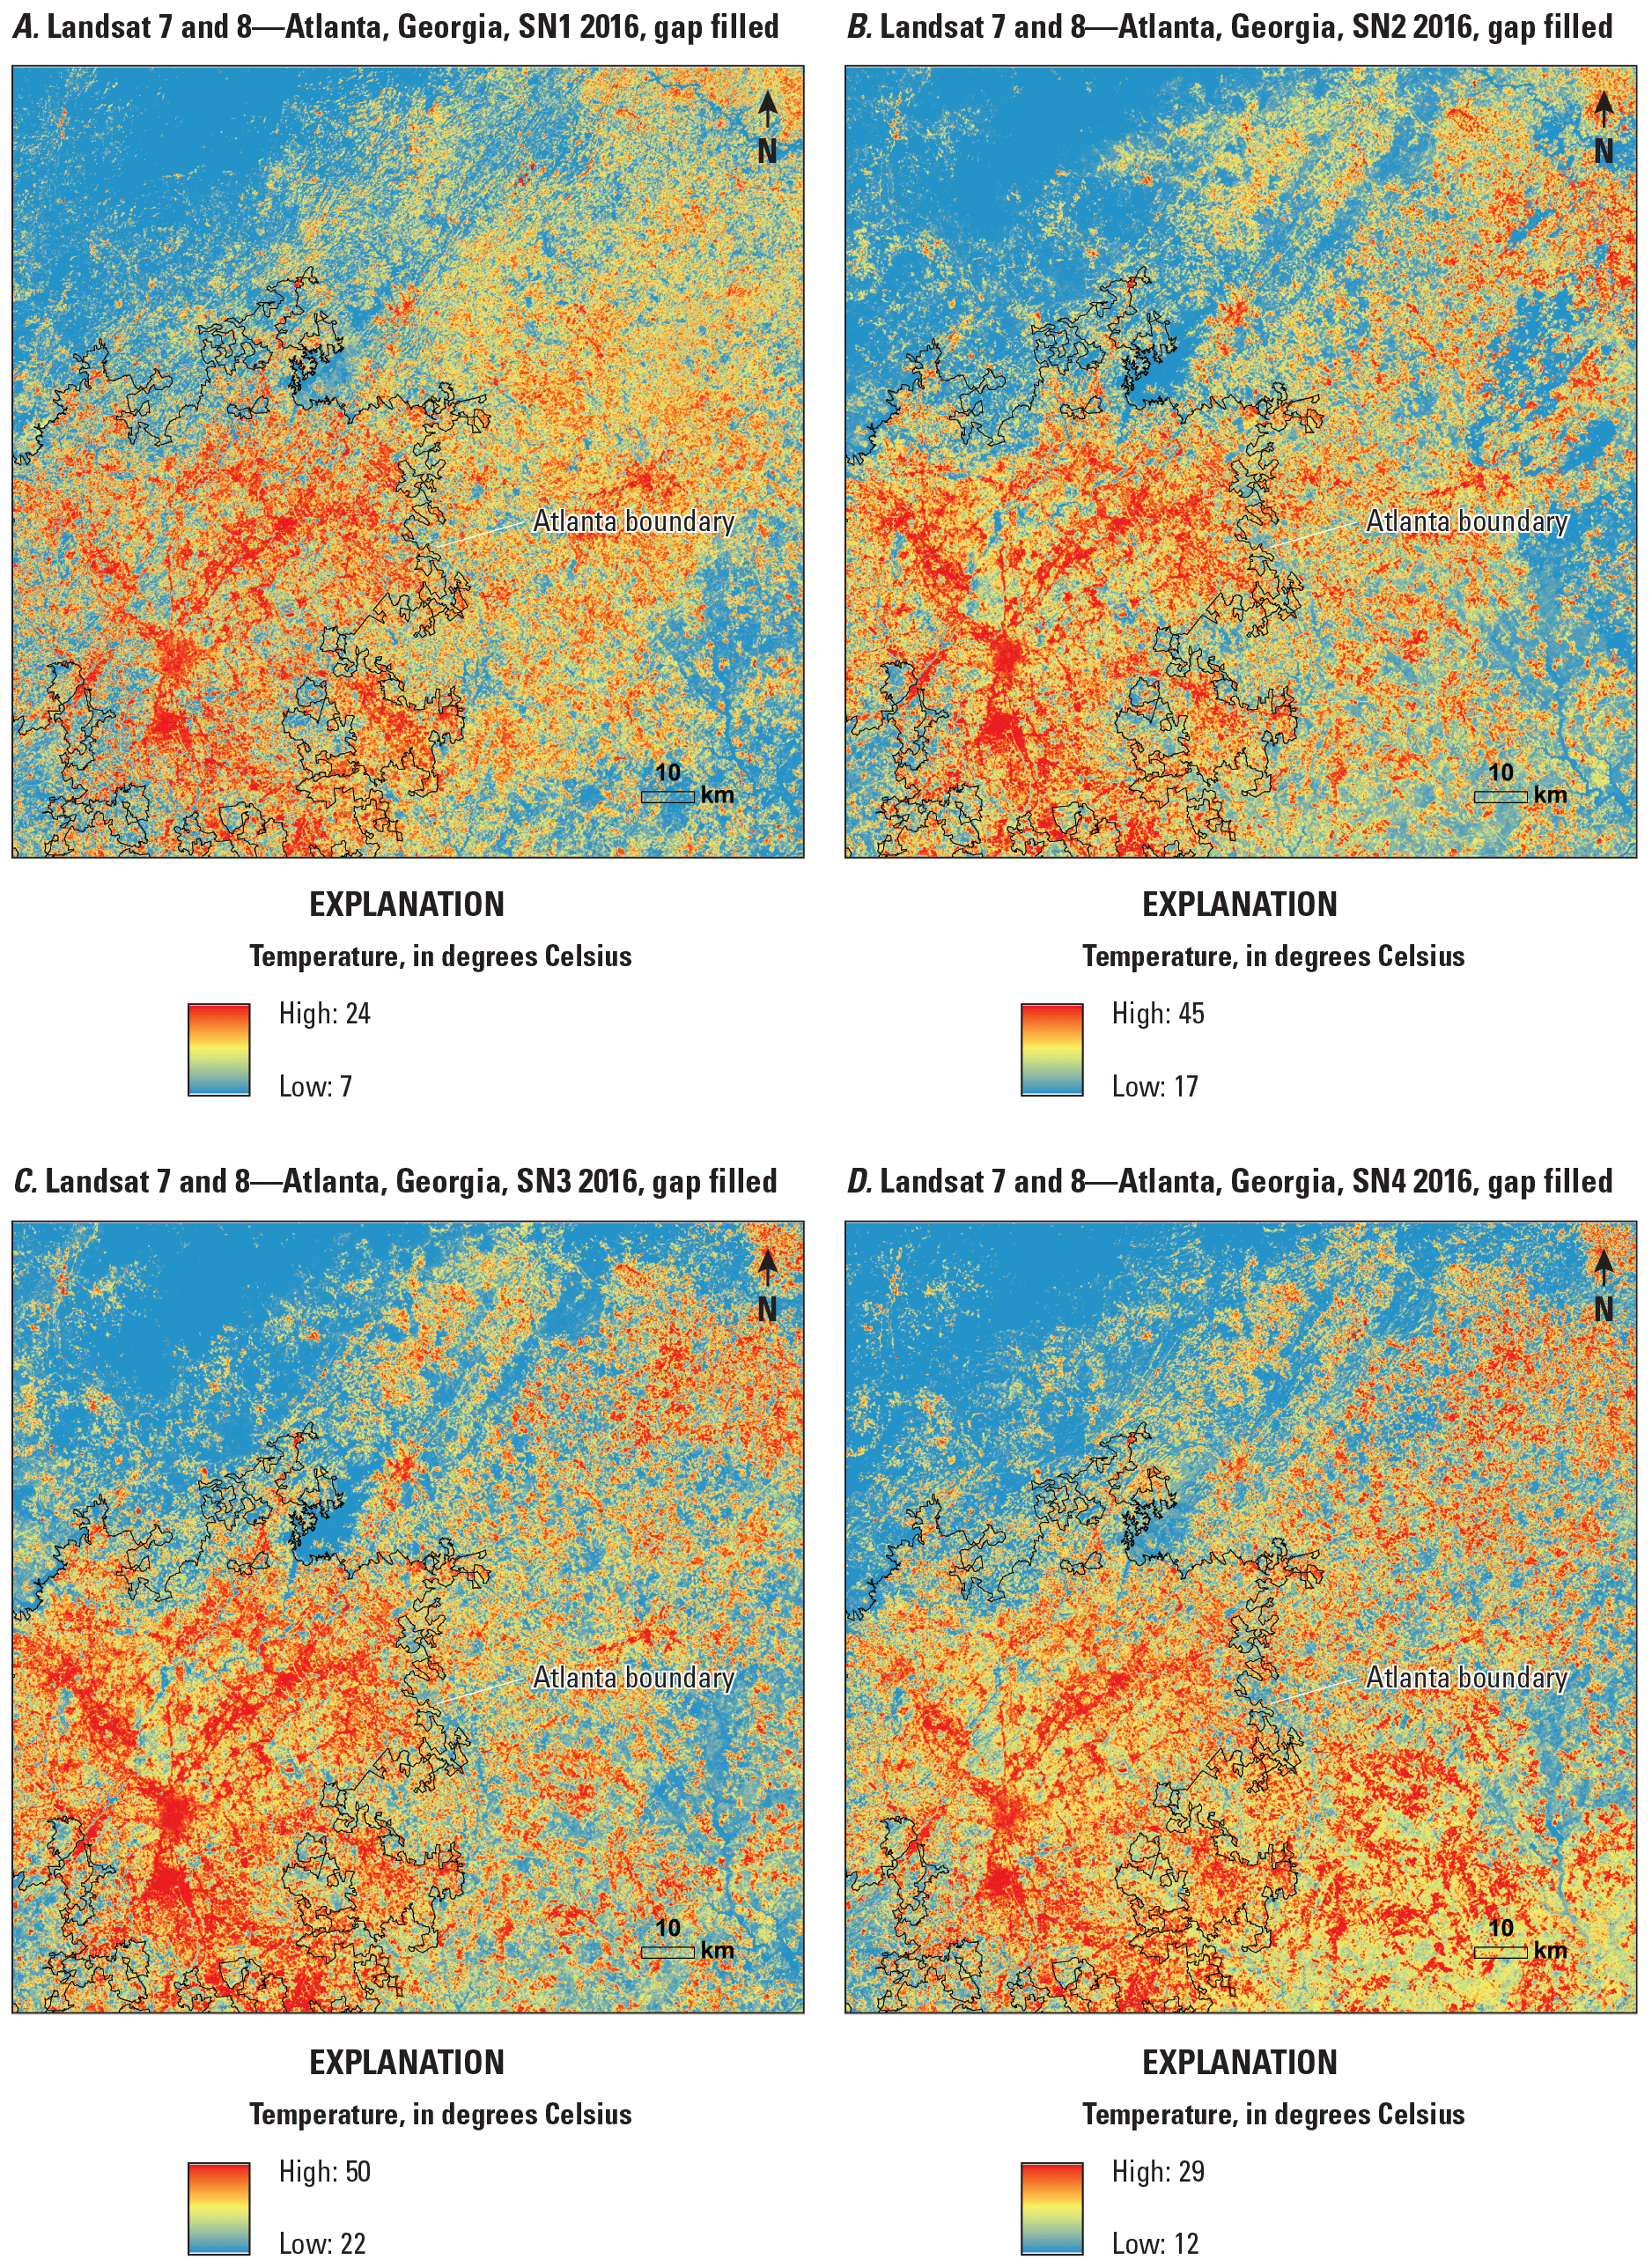 Seasonal means of gap-filled Landsat surface temperature in Atlanta, Georgia, 2016.